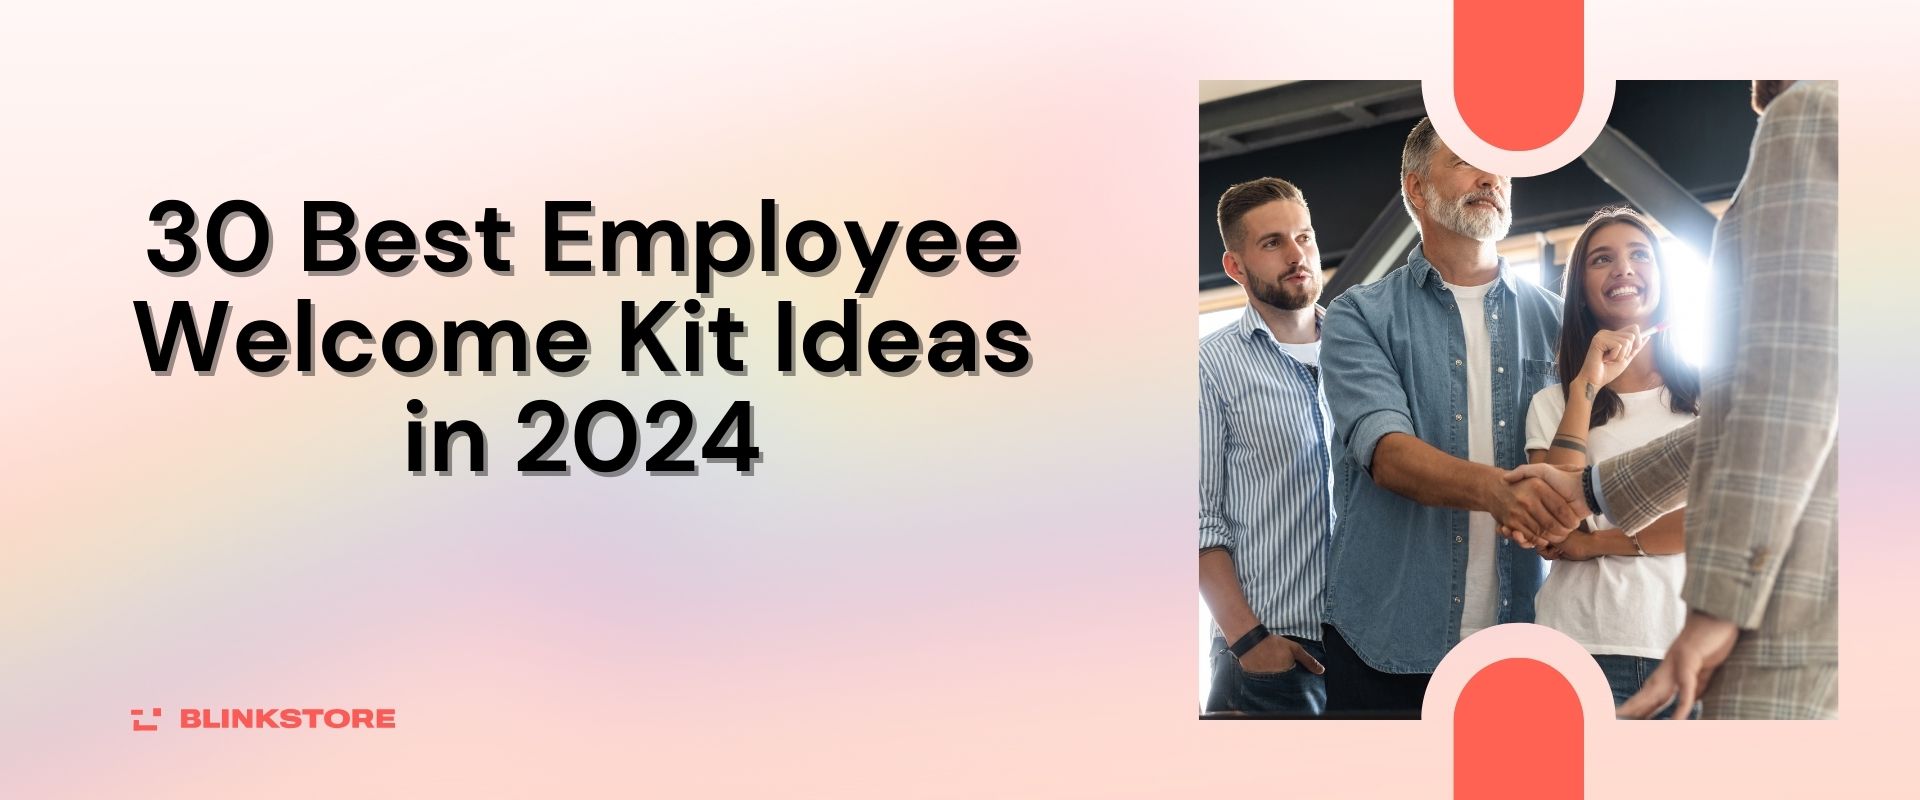 30 Best Employee Welcome Kit Ideas in 2024